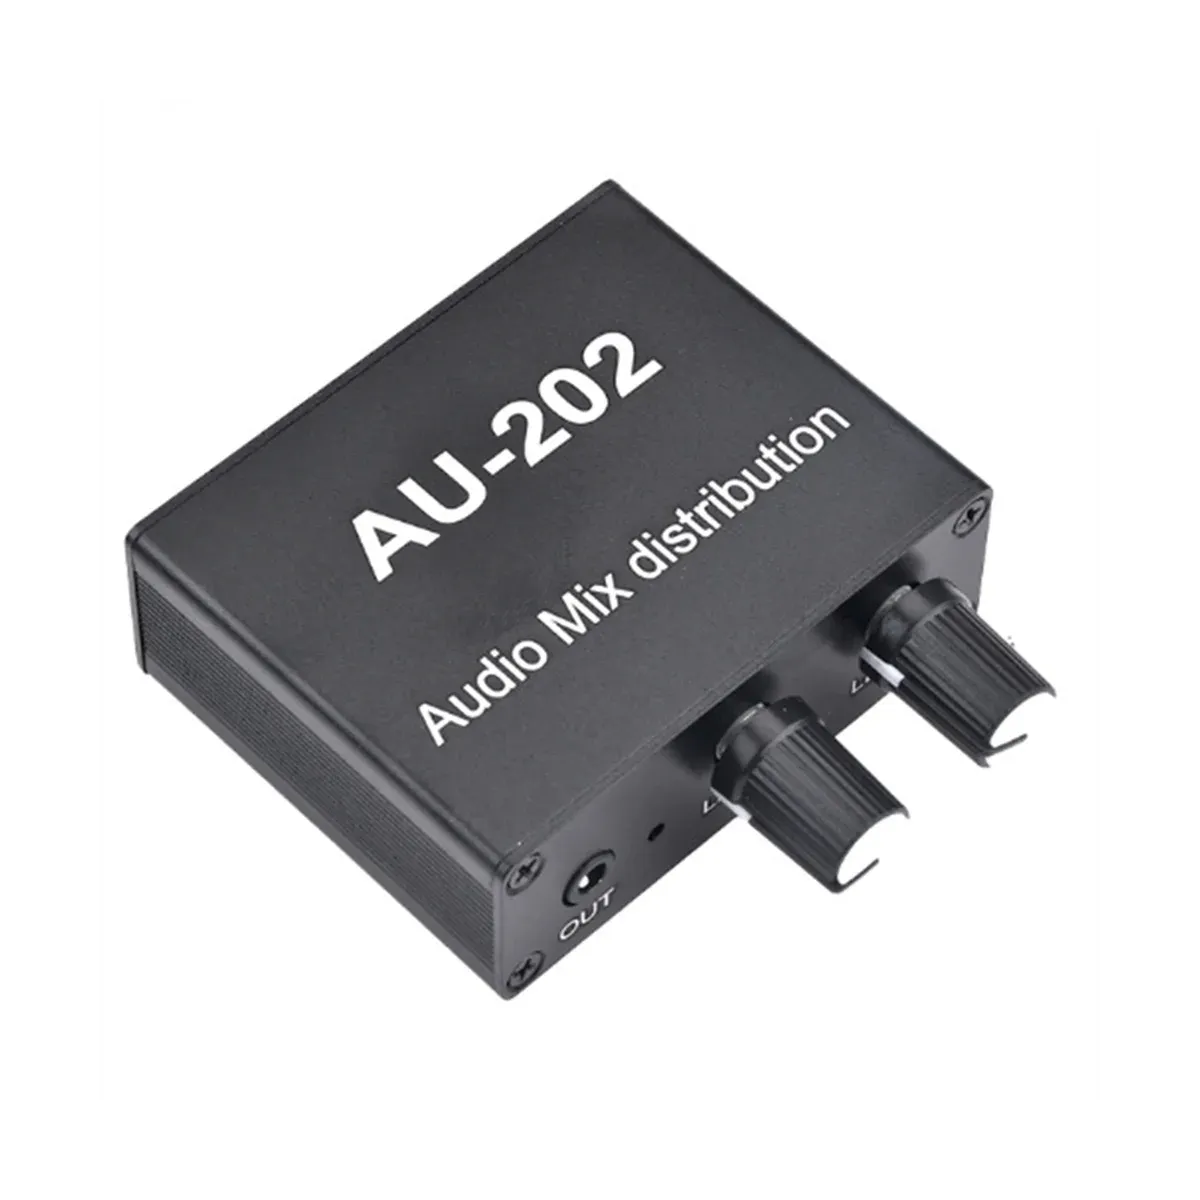 Verstärker AU202 2 Eingabe 2 Ausgangsstereo -Mischer Audioverteiler für Kopfhörer Externe Leistungsverstärker allein Steuerelemente